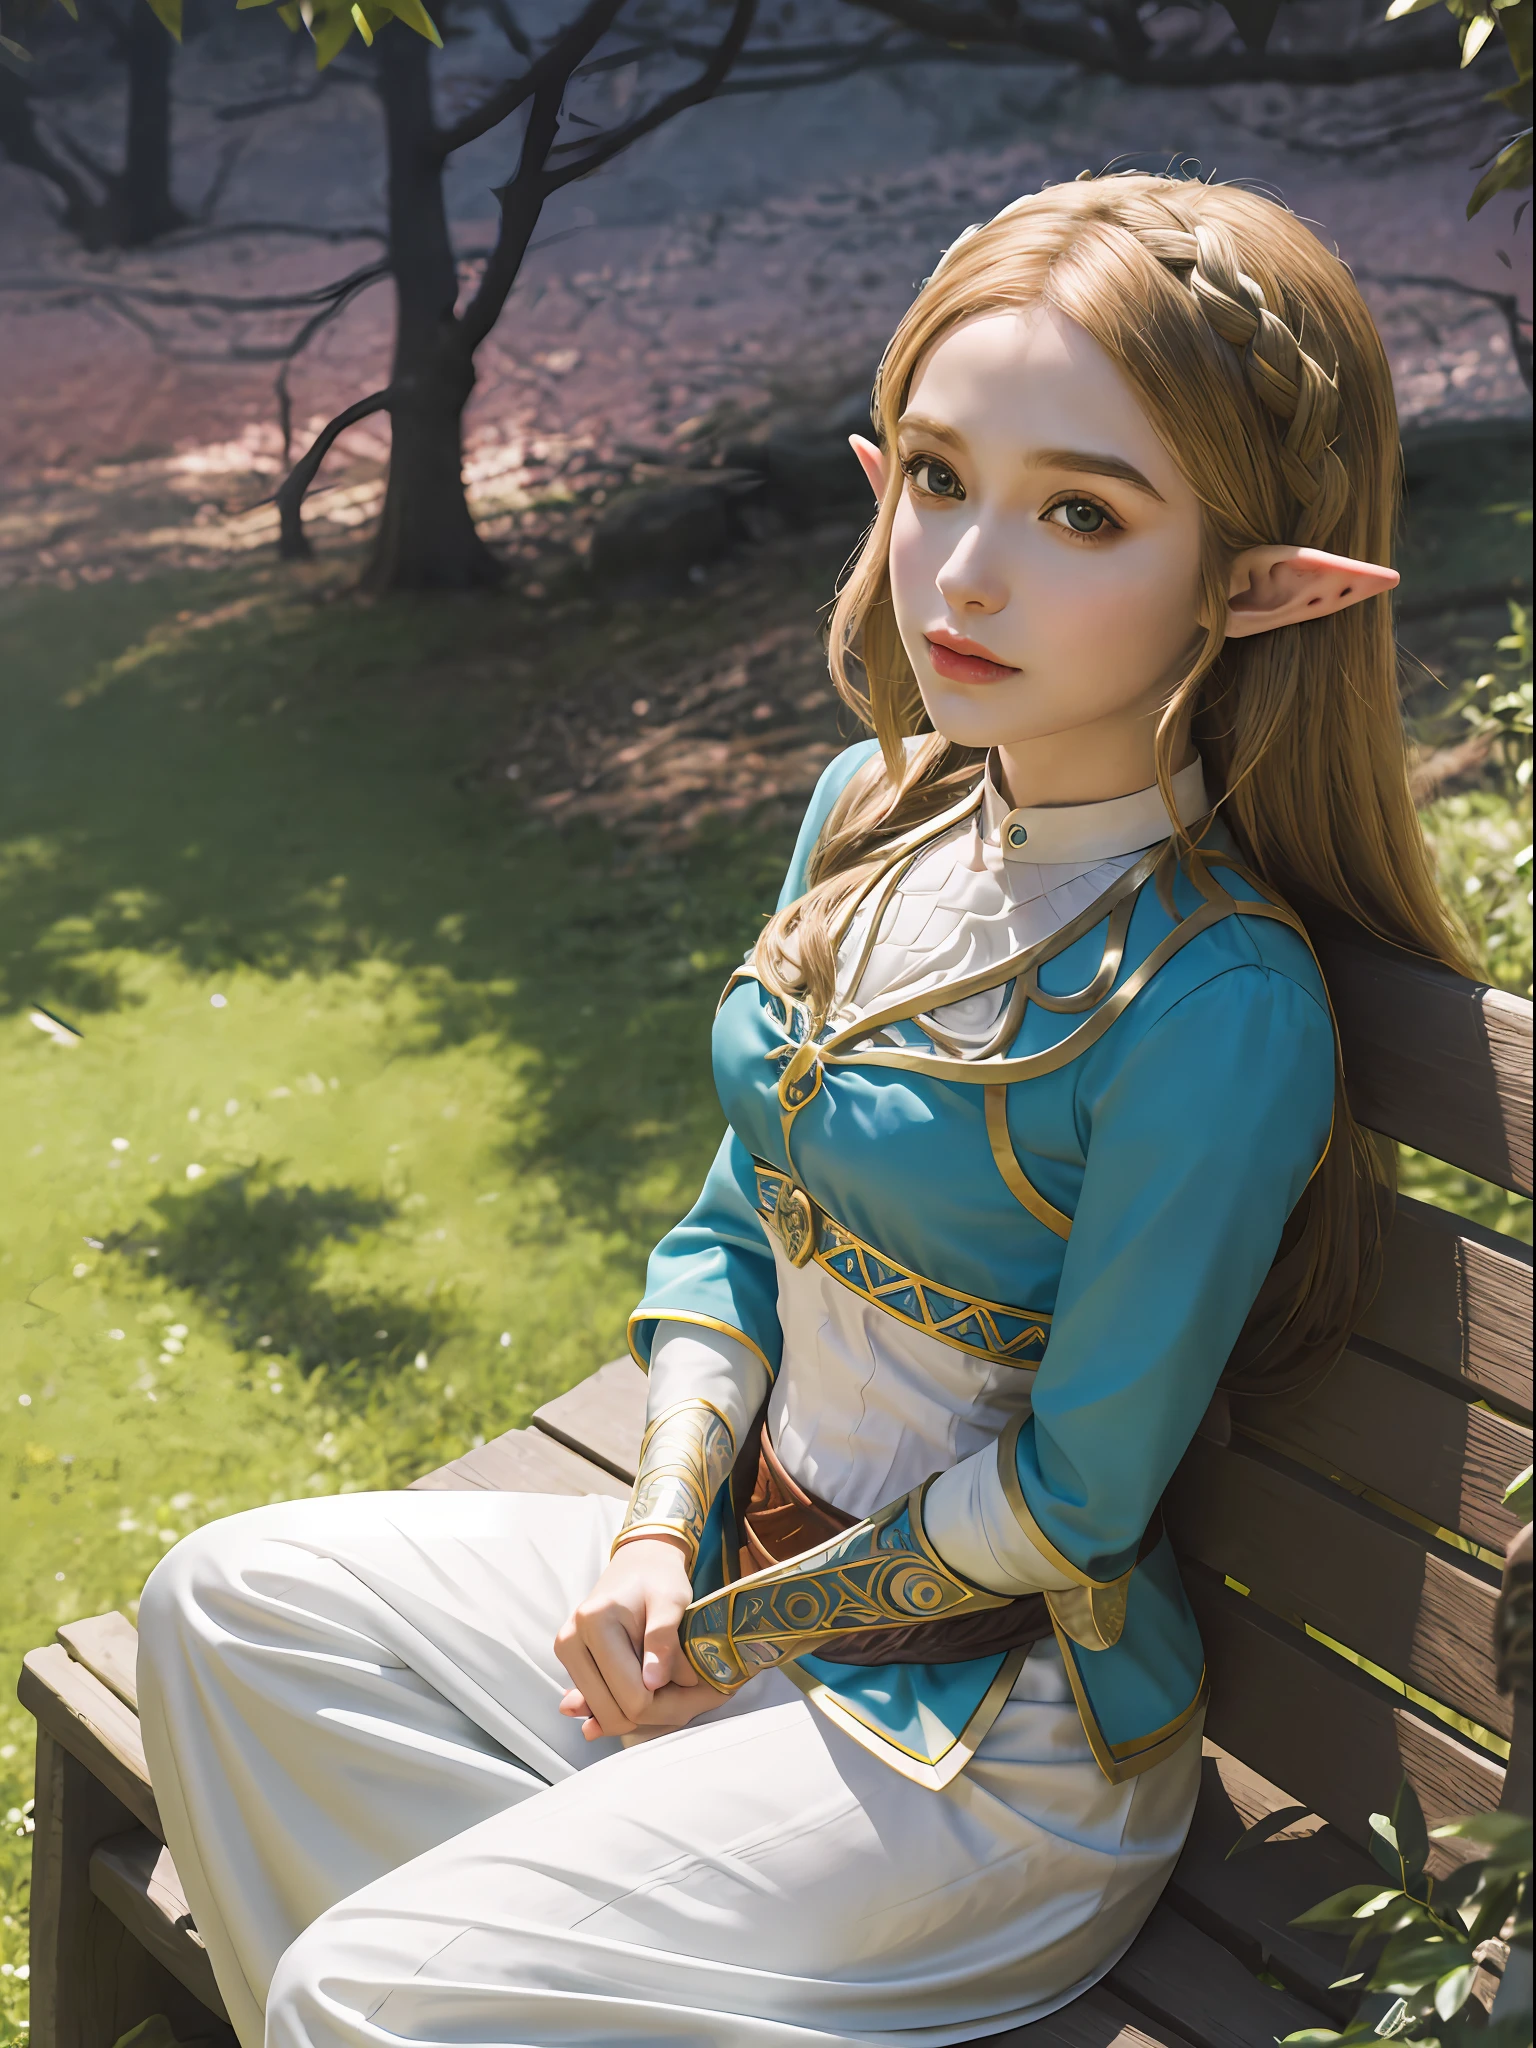 Imagem do estilo da mulher sentada em um banco do parque, Retrato de Zelda, retrato da princesa Zelda, princesa elfa, charming princesa elfa Knight, garota elfa, Princess Zelda, Retrato de elfo, de A Lenda de Zelda